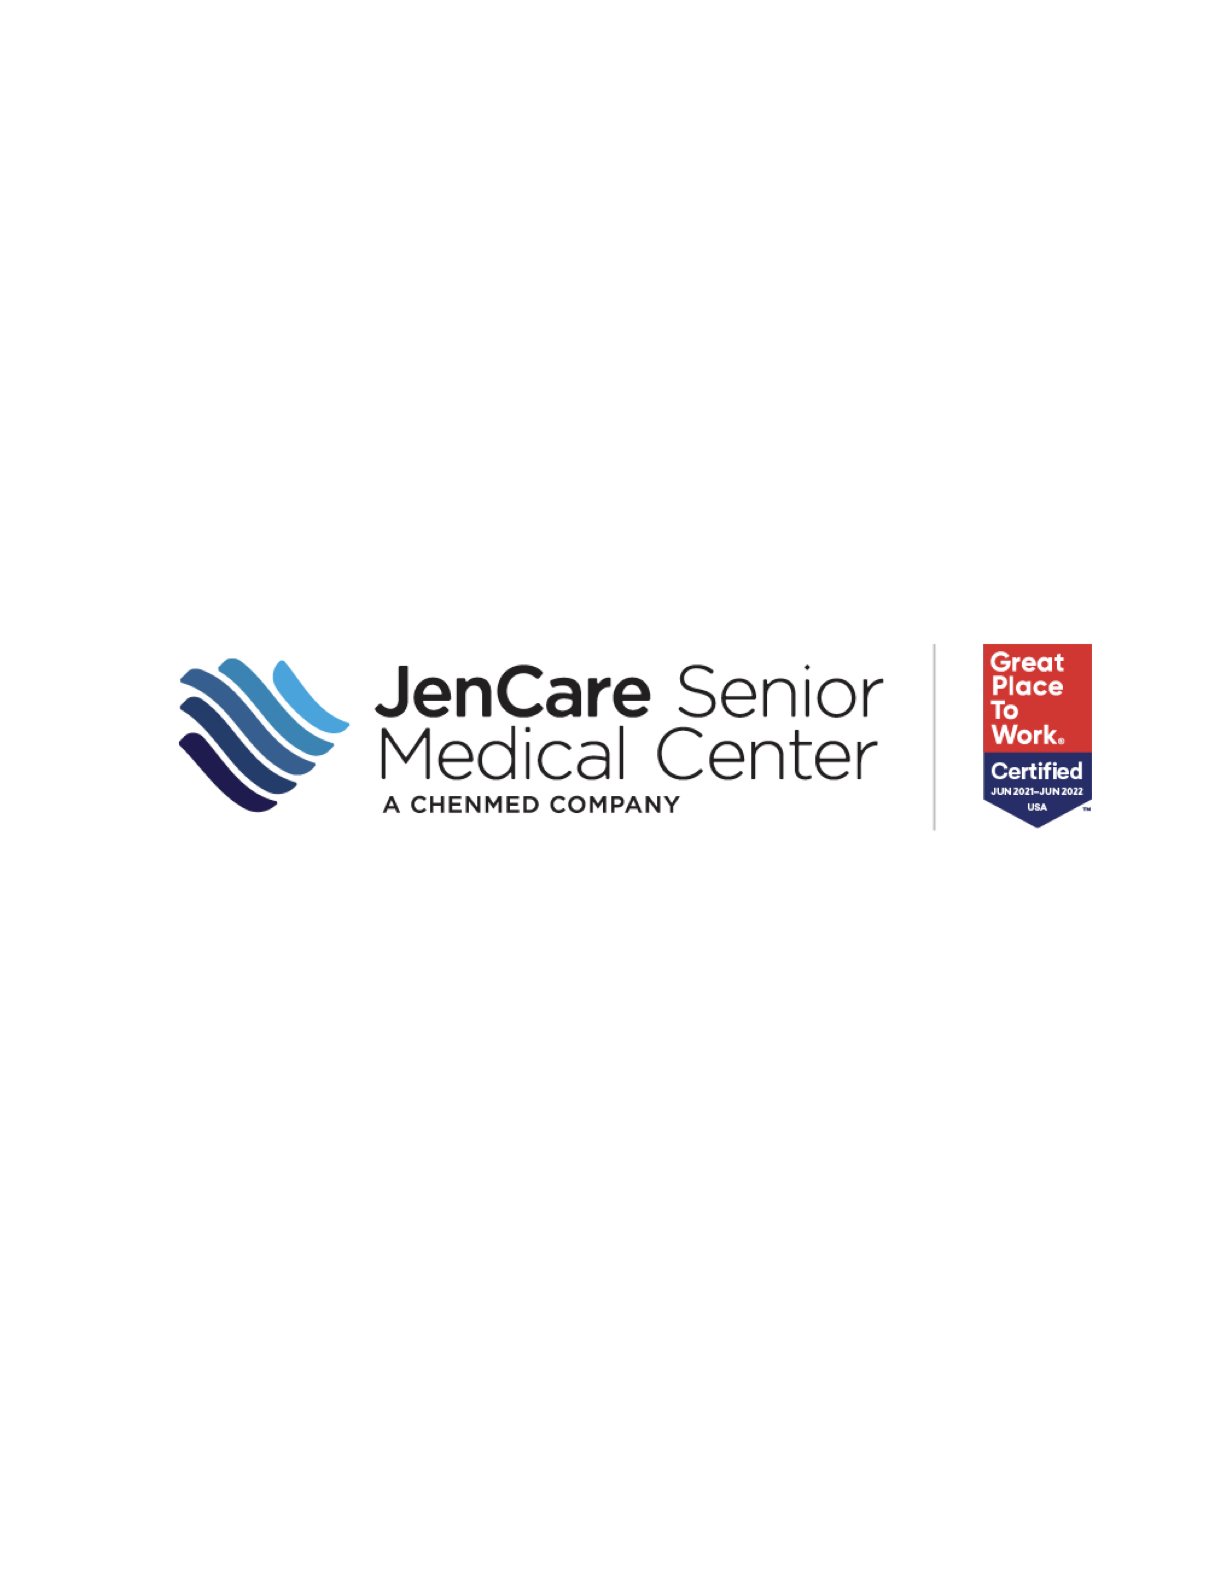 _JenCare logo._1.jpeg